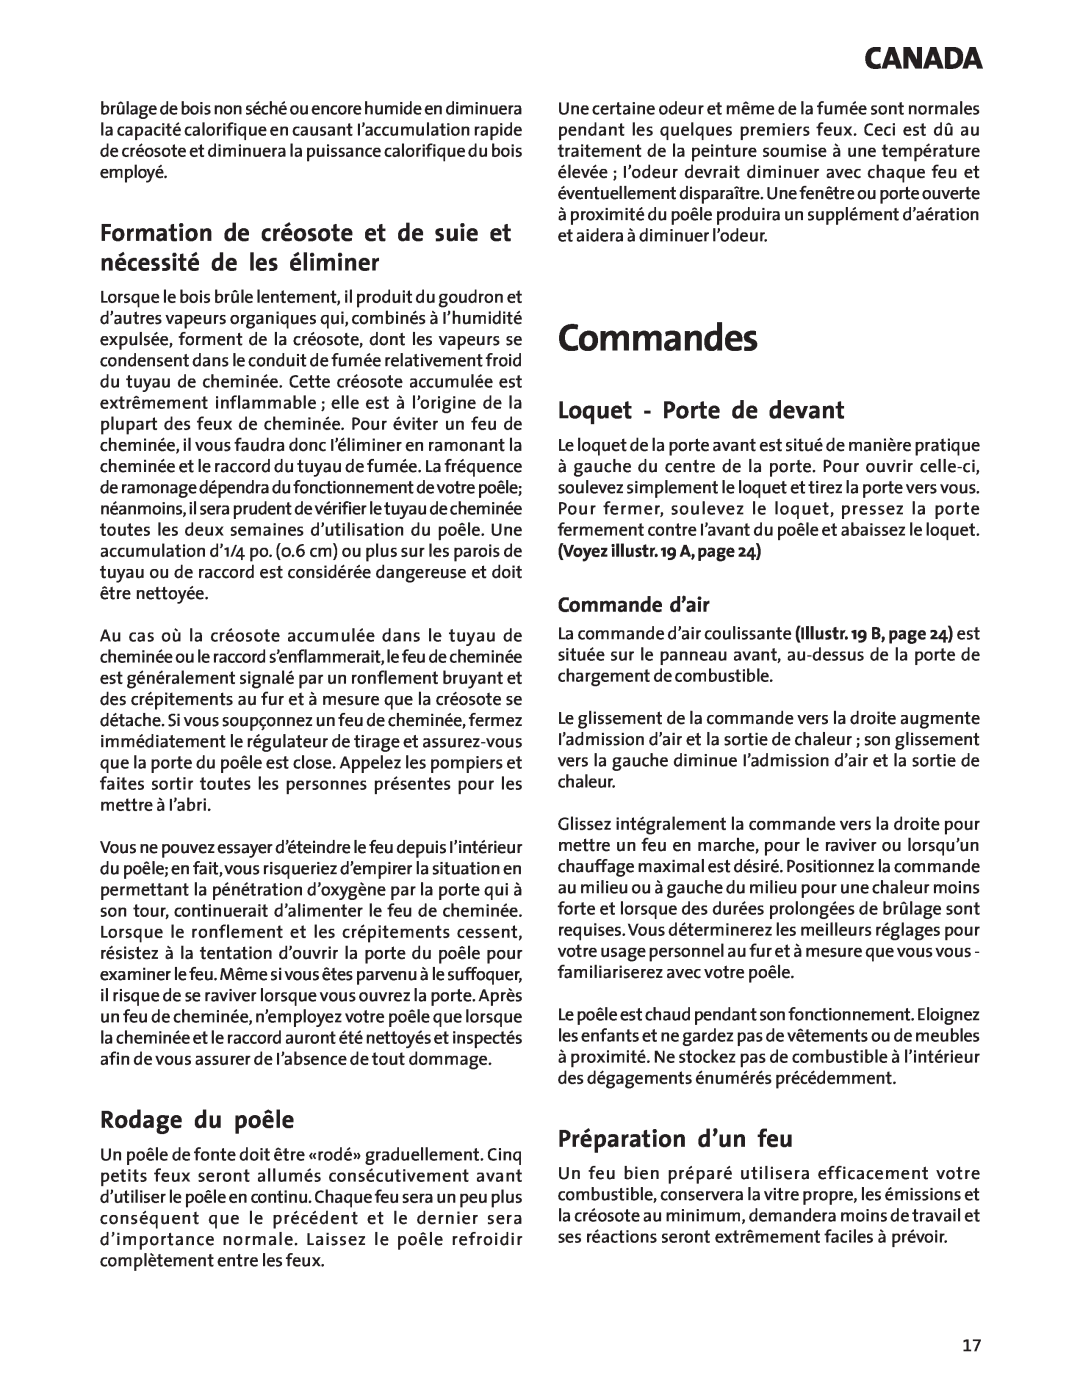 Jotul Wood Stove manual Commandes, Loquet - Porte de devant, Rodage du poêle, Préparation d’un feu, Commande d’air, Canada 